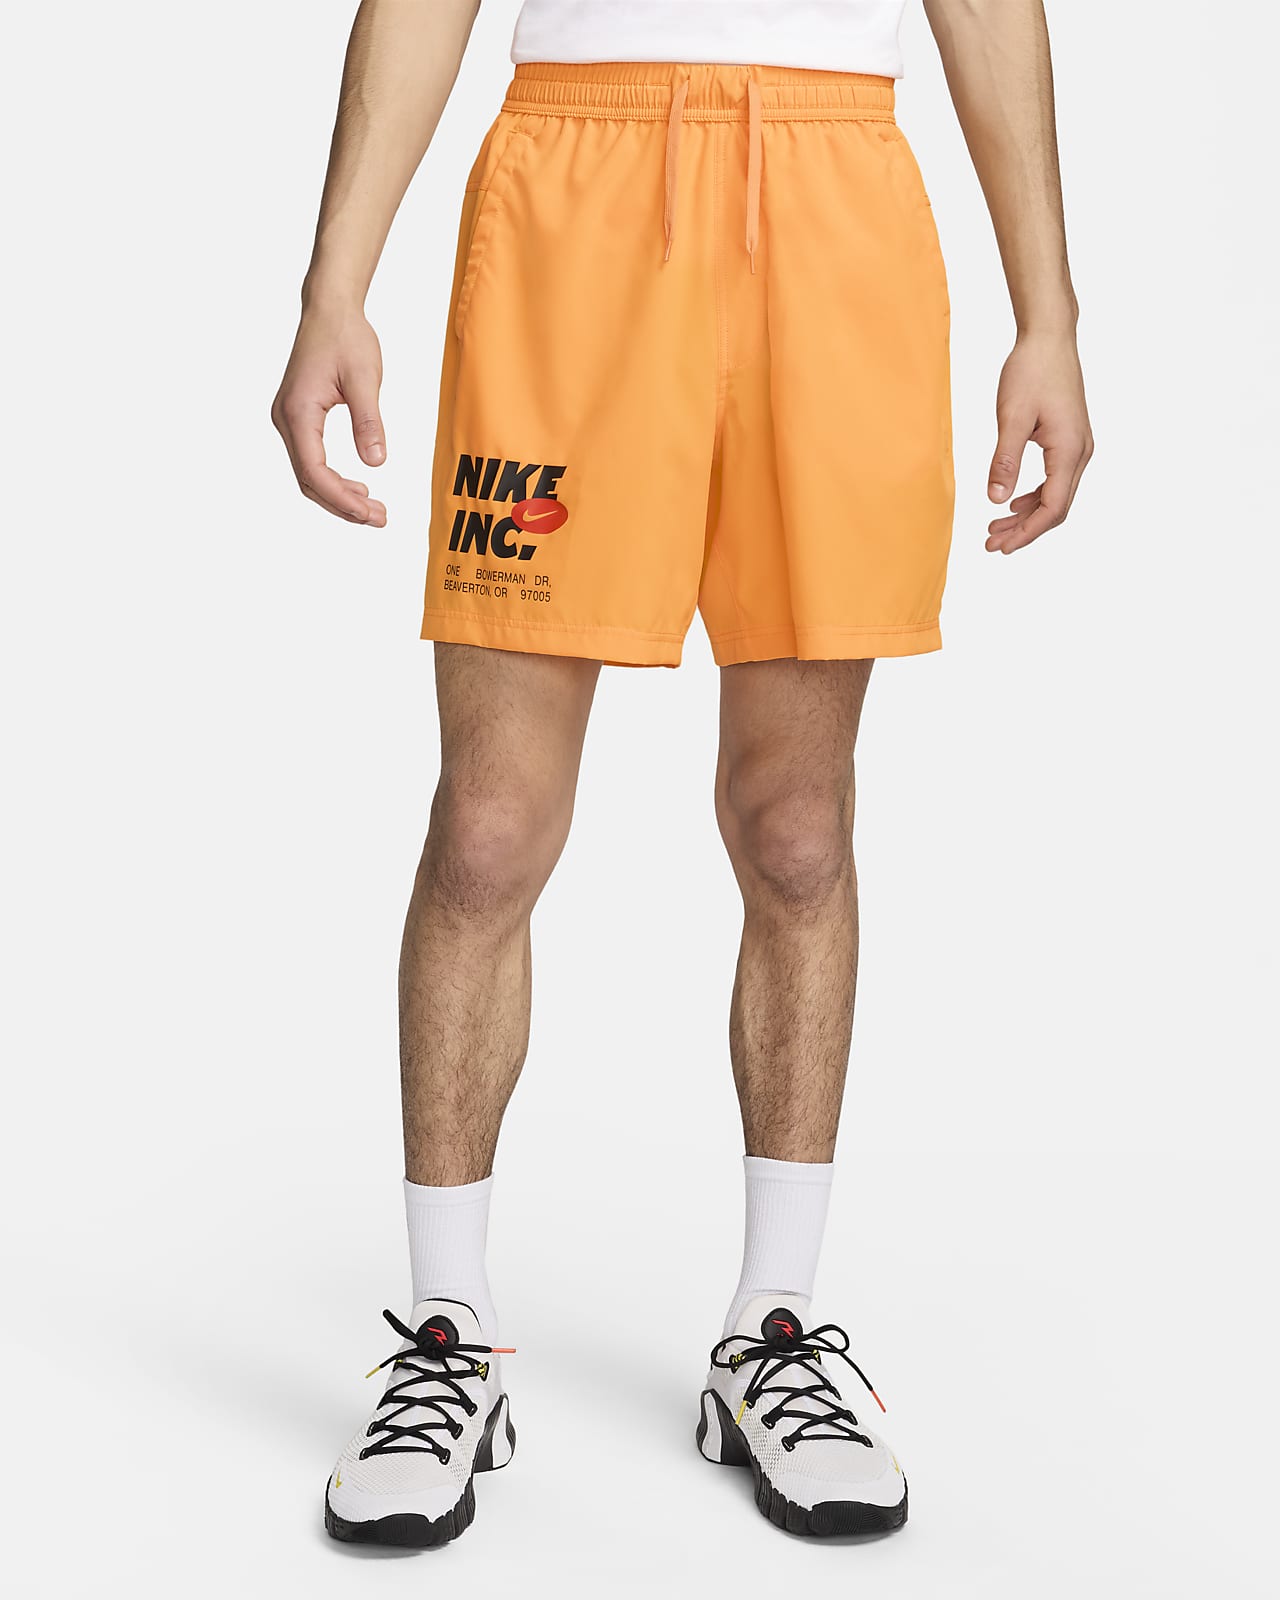 Shorts da fitness Dri-FIT non foderati 18 cm Nike Form – Uomo